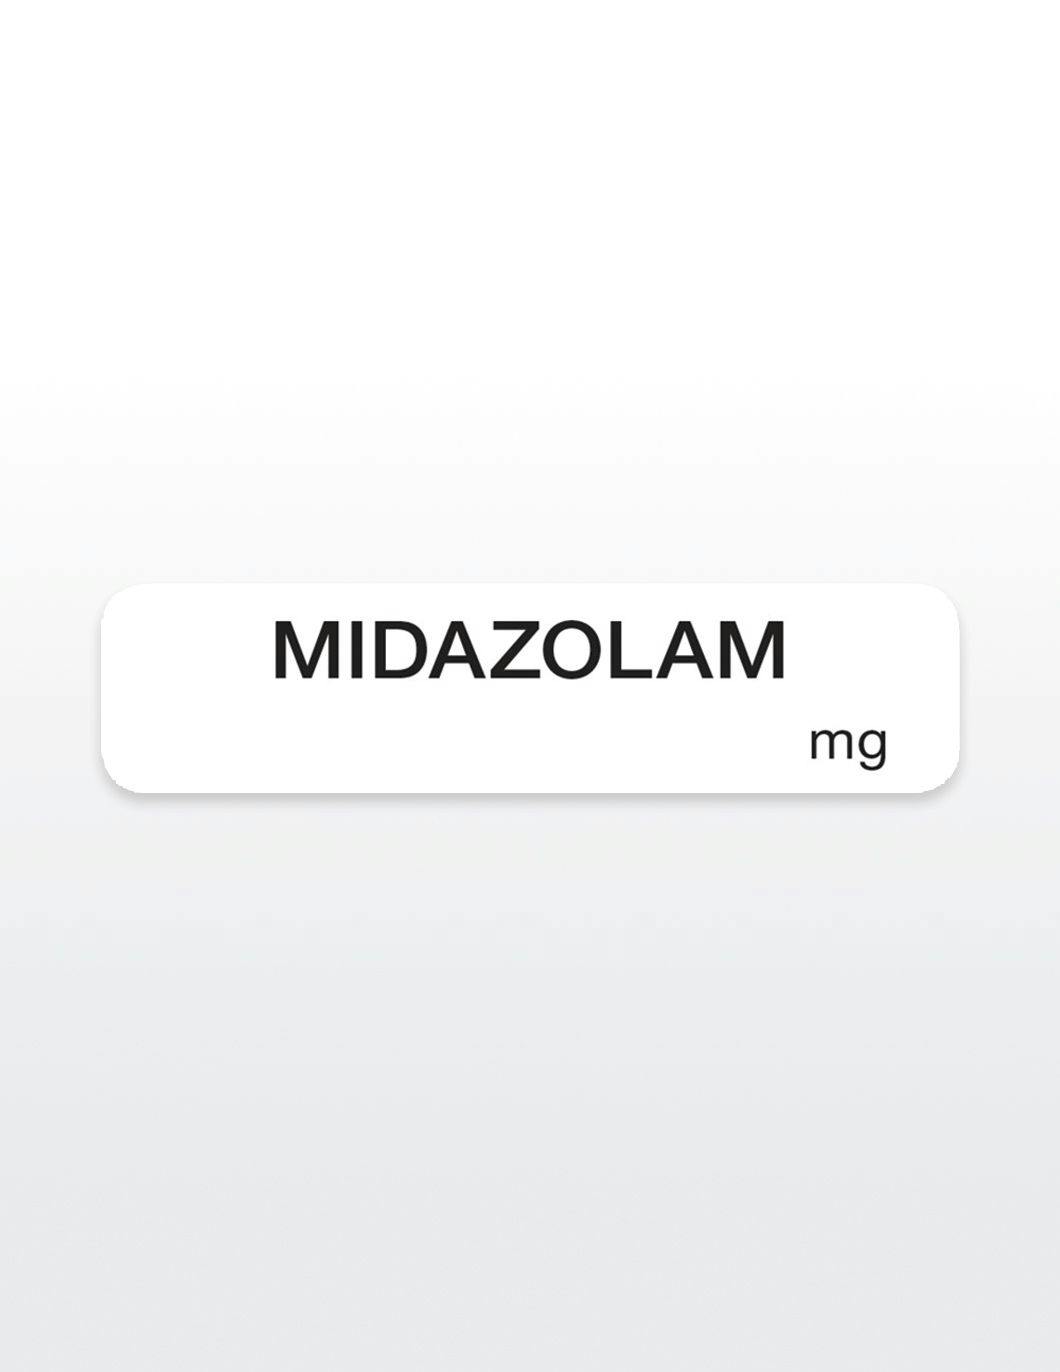 midazolam-drug-syringe-stickers